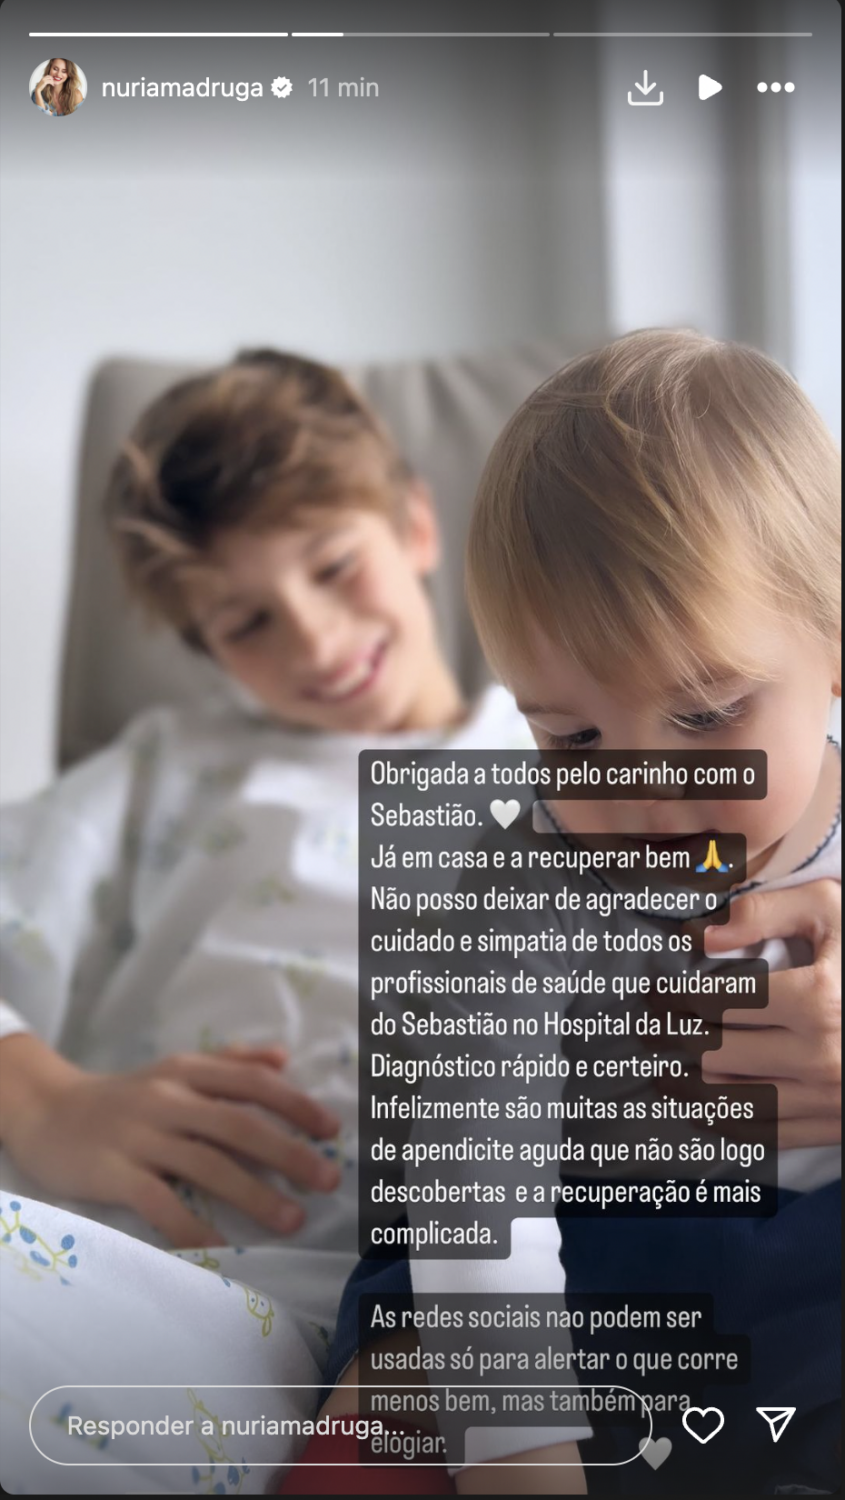 Núria Madruga dá &#8216;novidades&#8217; após internamento do filho: &#8220;Obrigada pelo carinho&#8221;